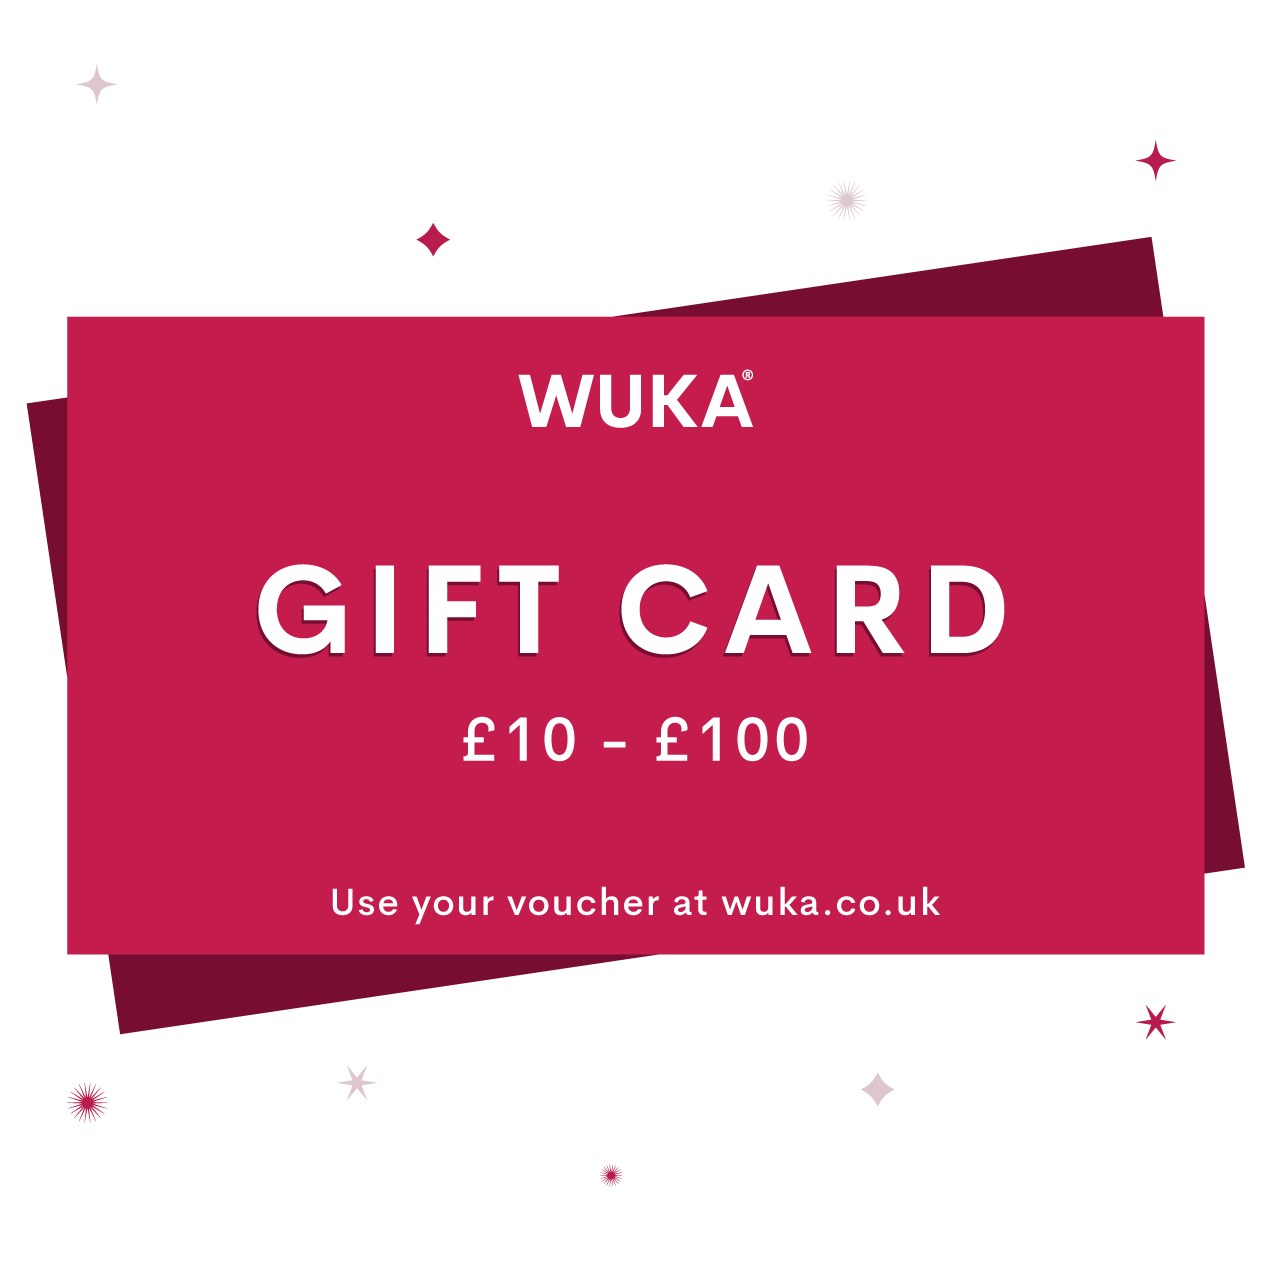 WUKA Gift Card